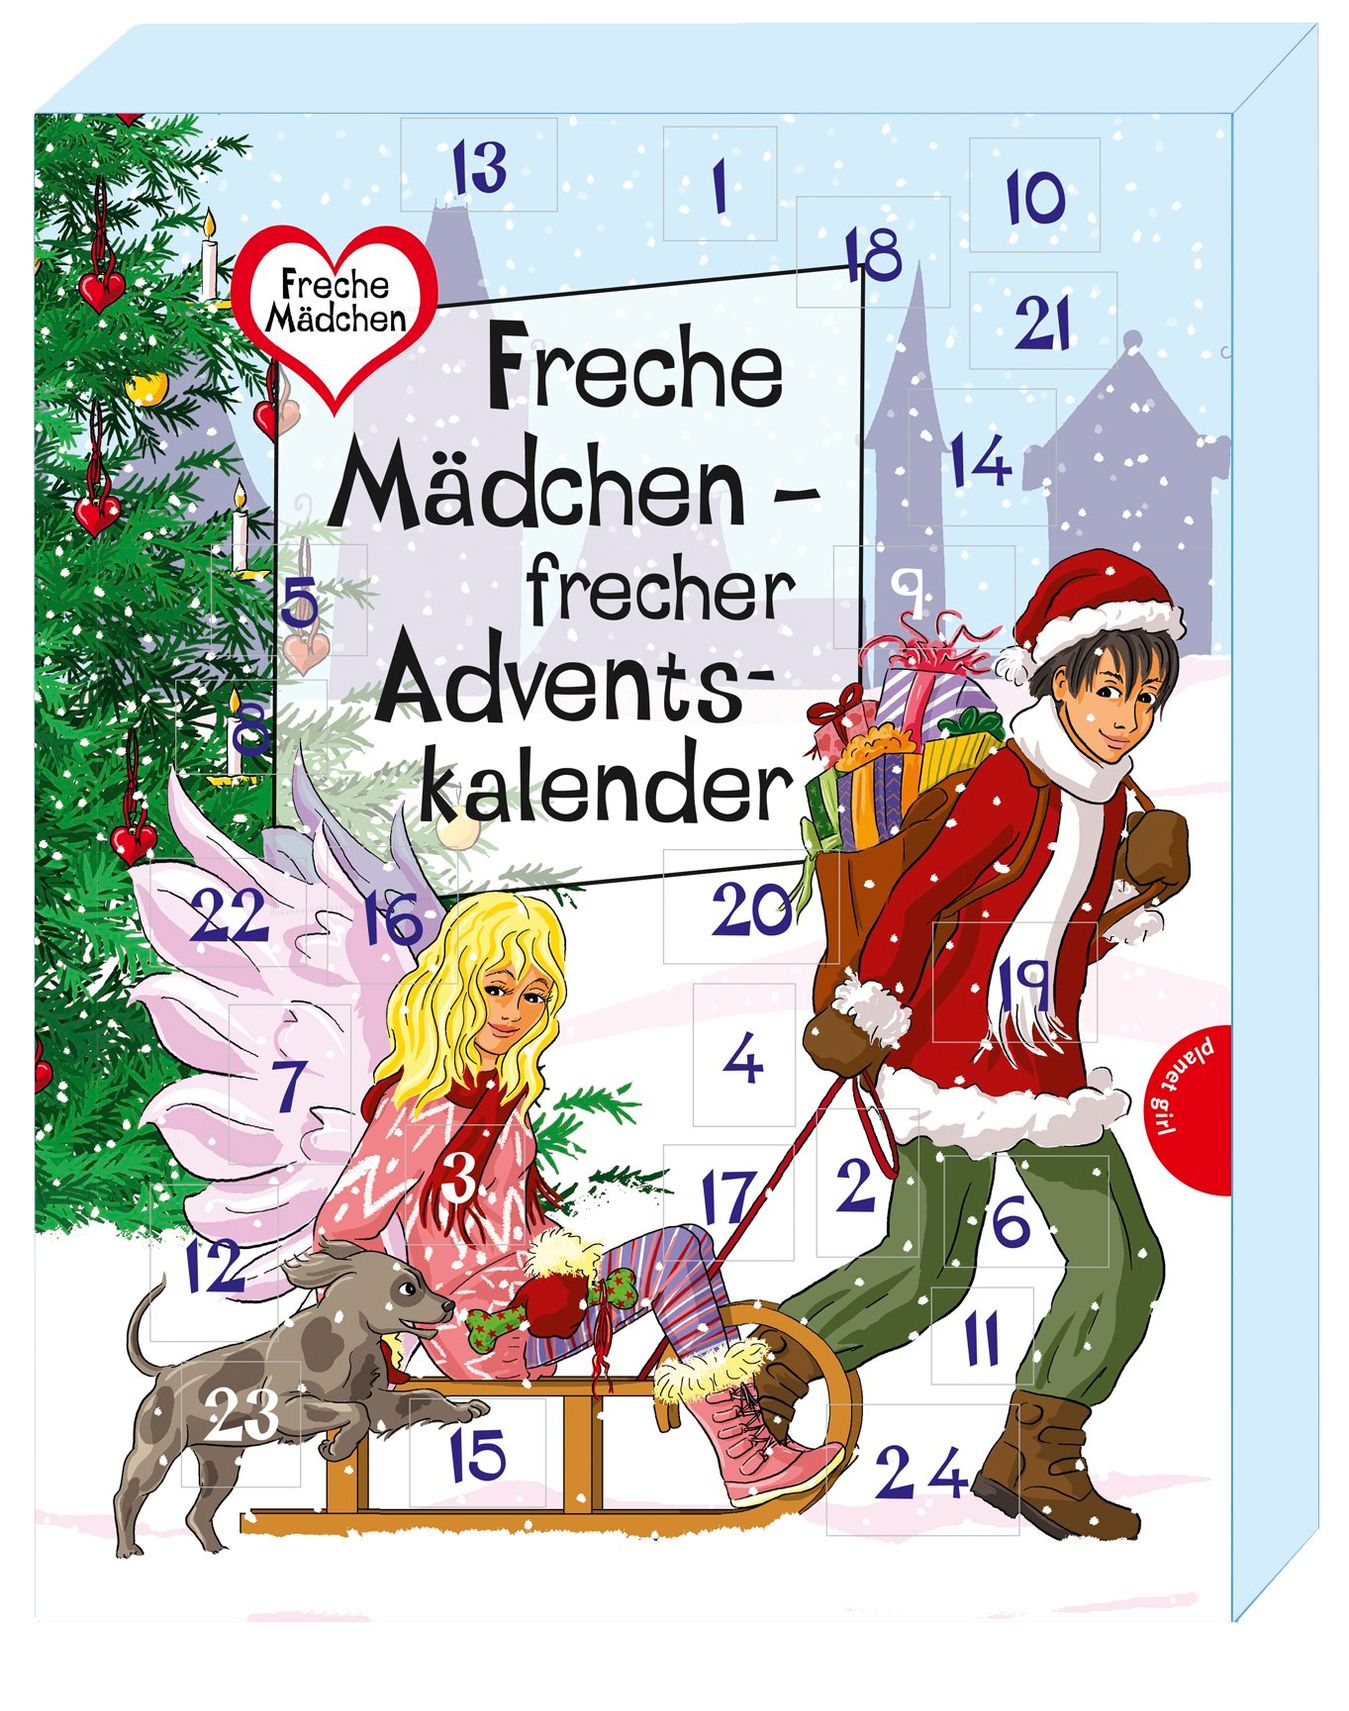 Freche Mädchen - frecher Adventskalender Buch versandkostenfrei bestellen